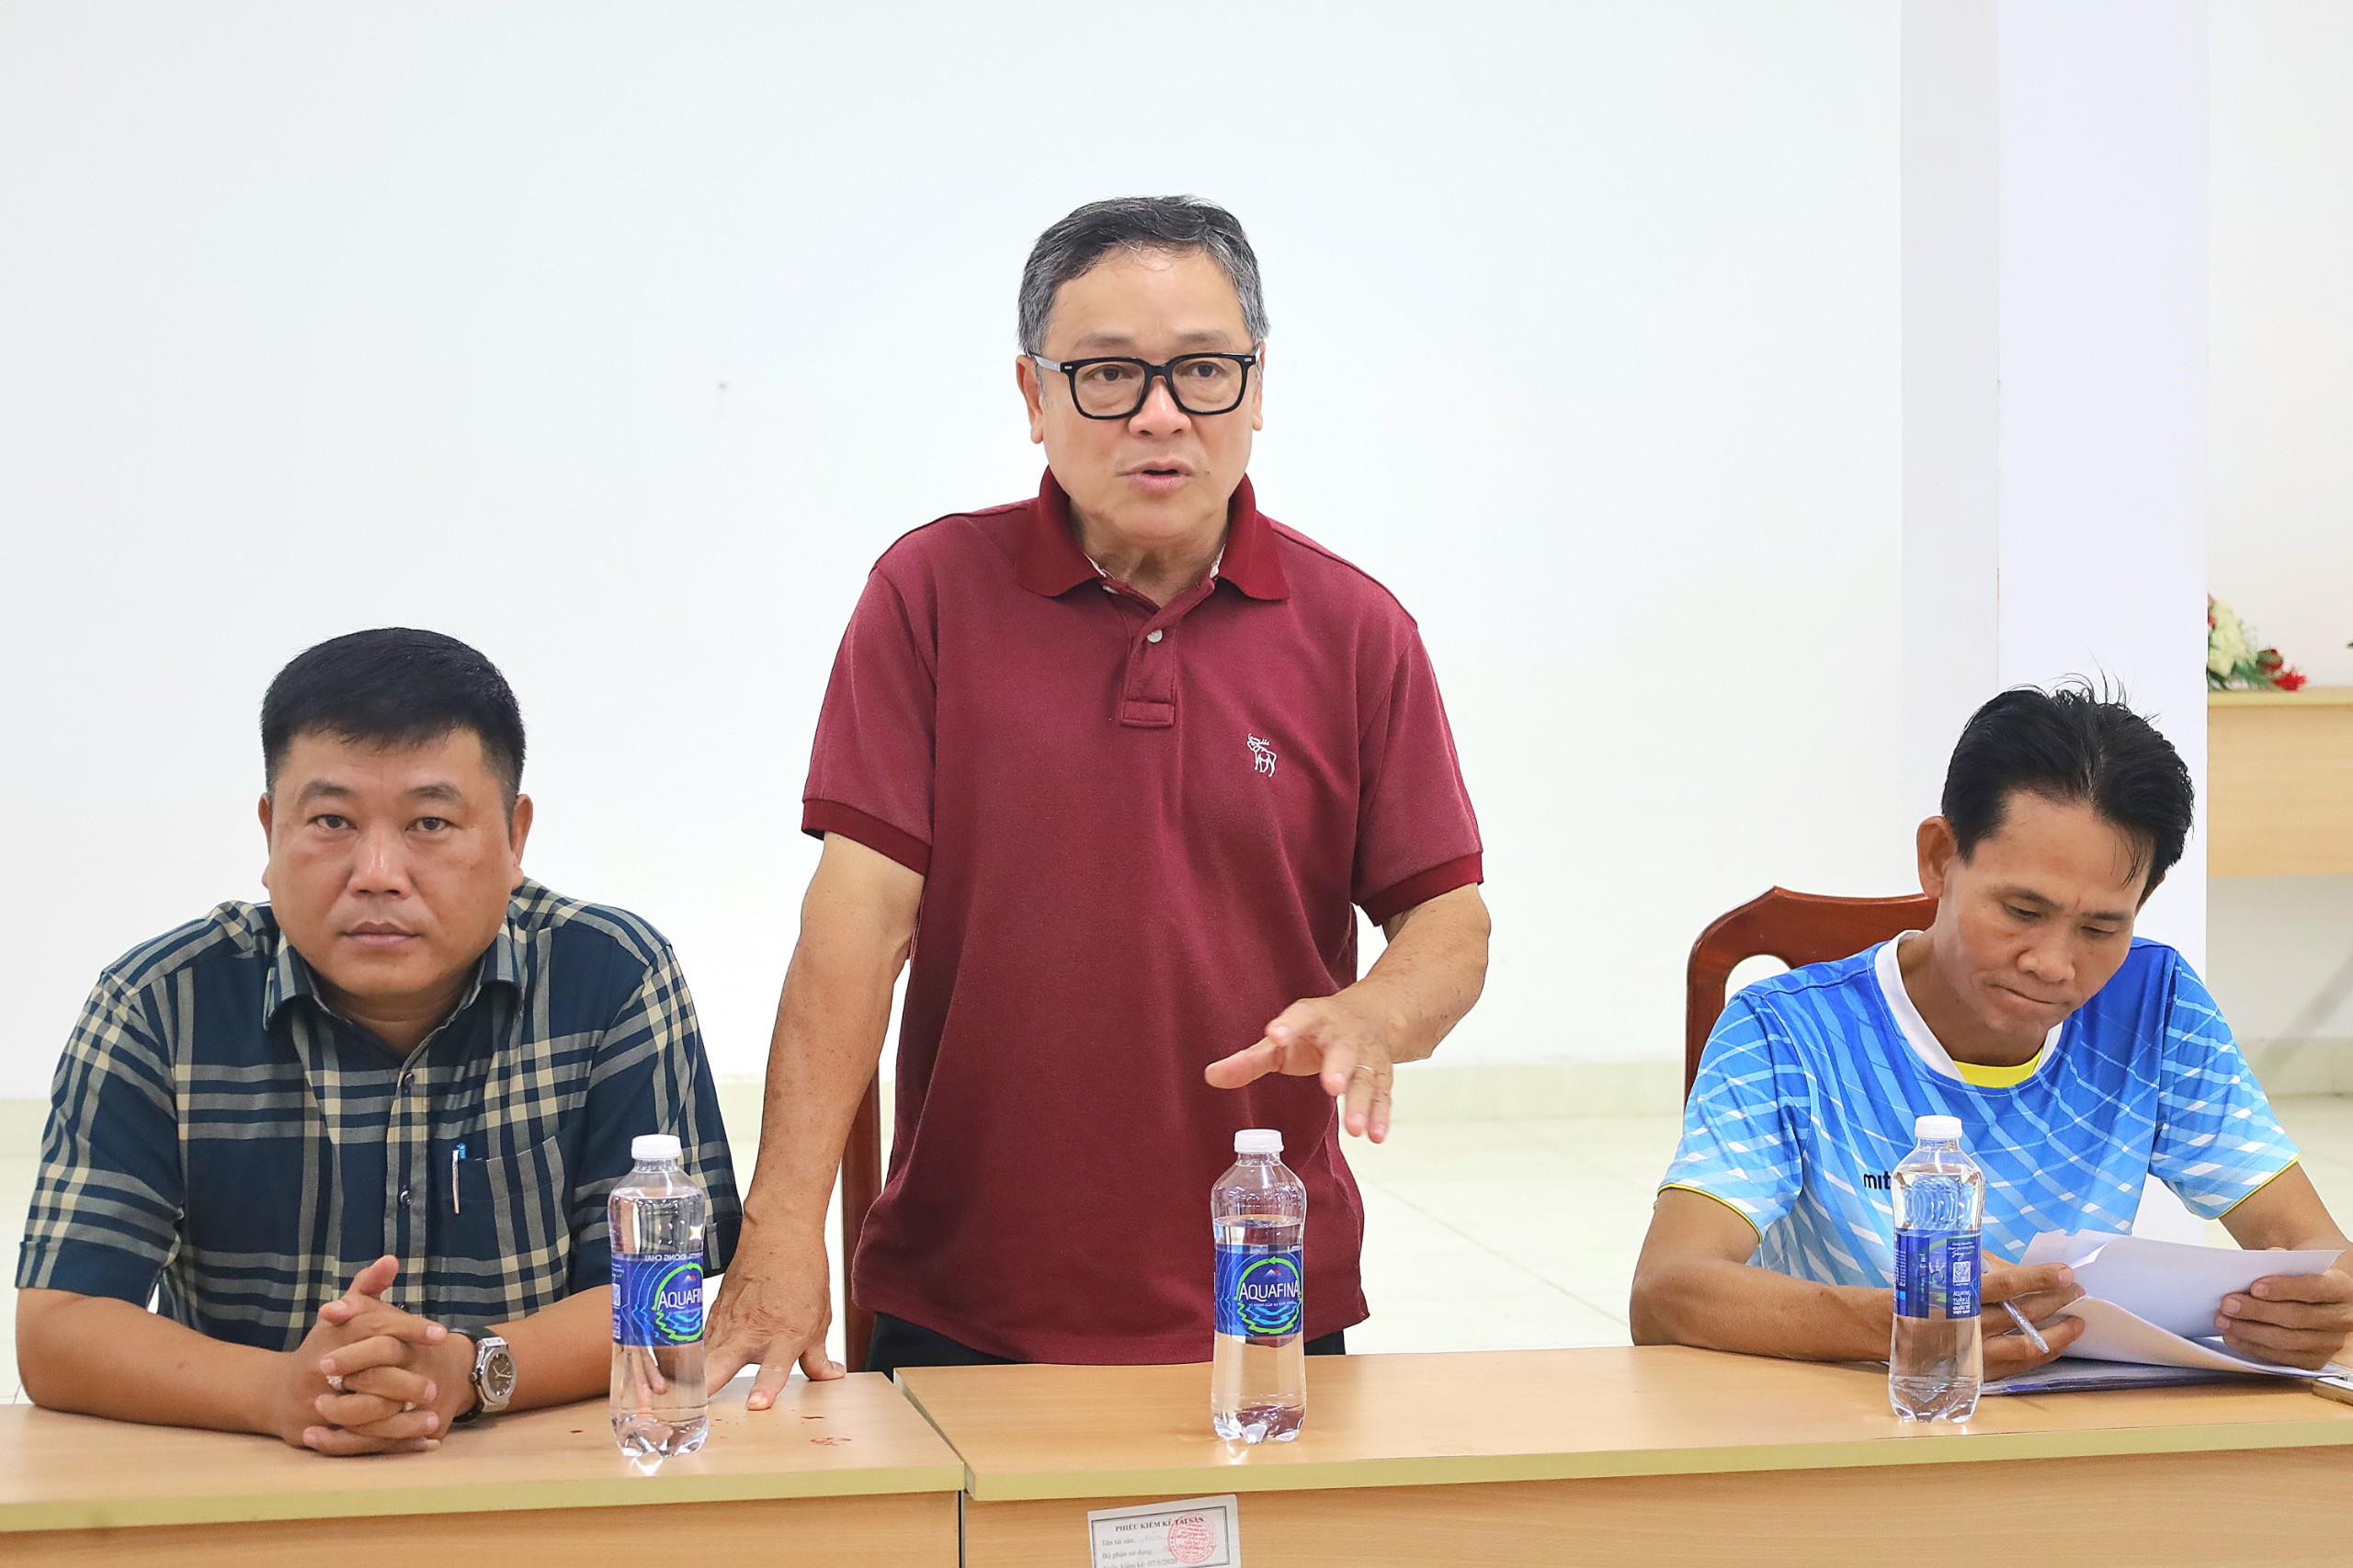 Ông Trần Duy Hùng - Trưởng phòng Phòng Quản lý Thể dục Thể thao thuộc Sở Văn hóa, Thể thao và Du lịch TP. Cần Thơ phát biểu tại buổi họp kỹ thuật.